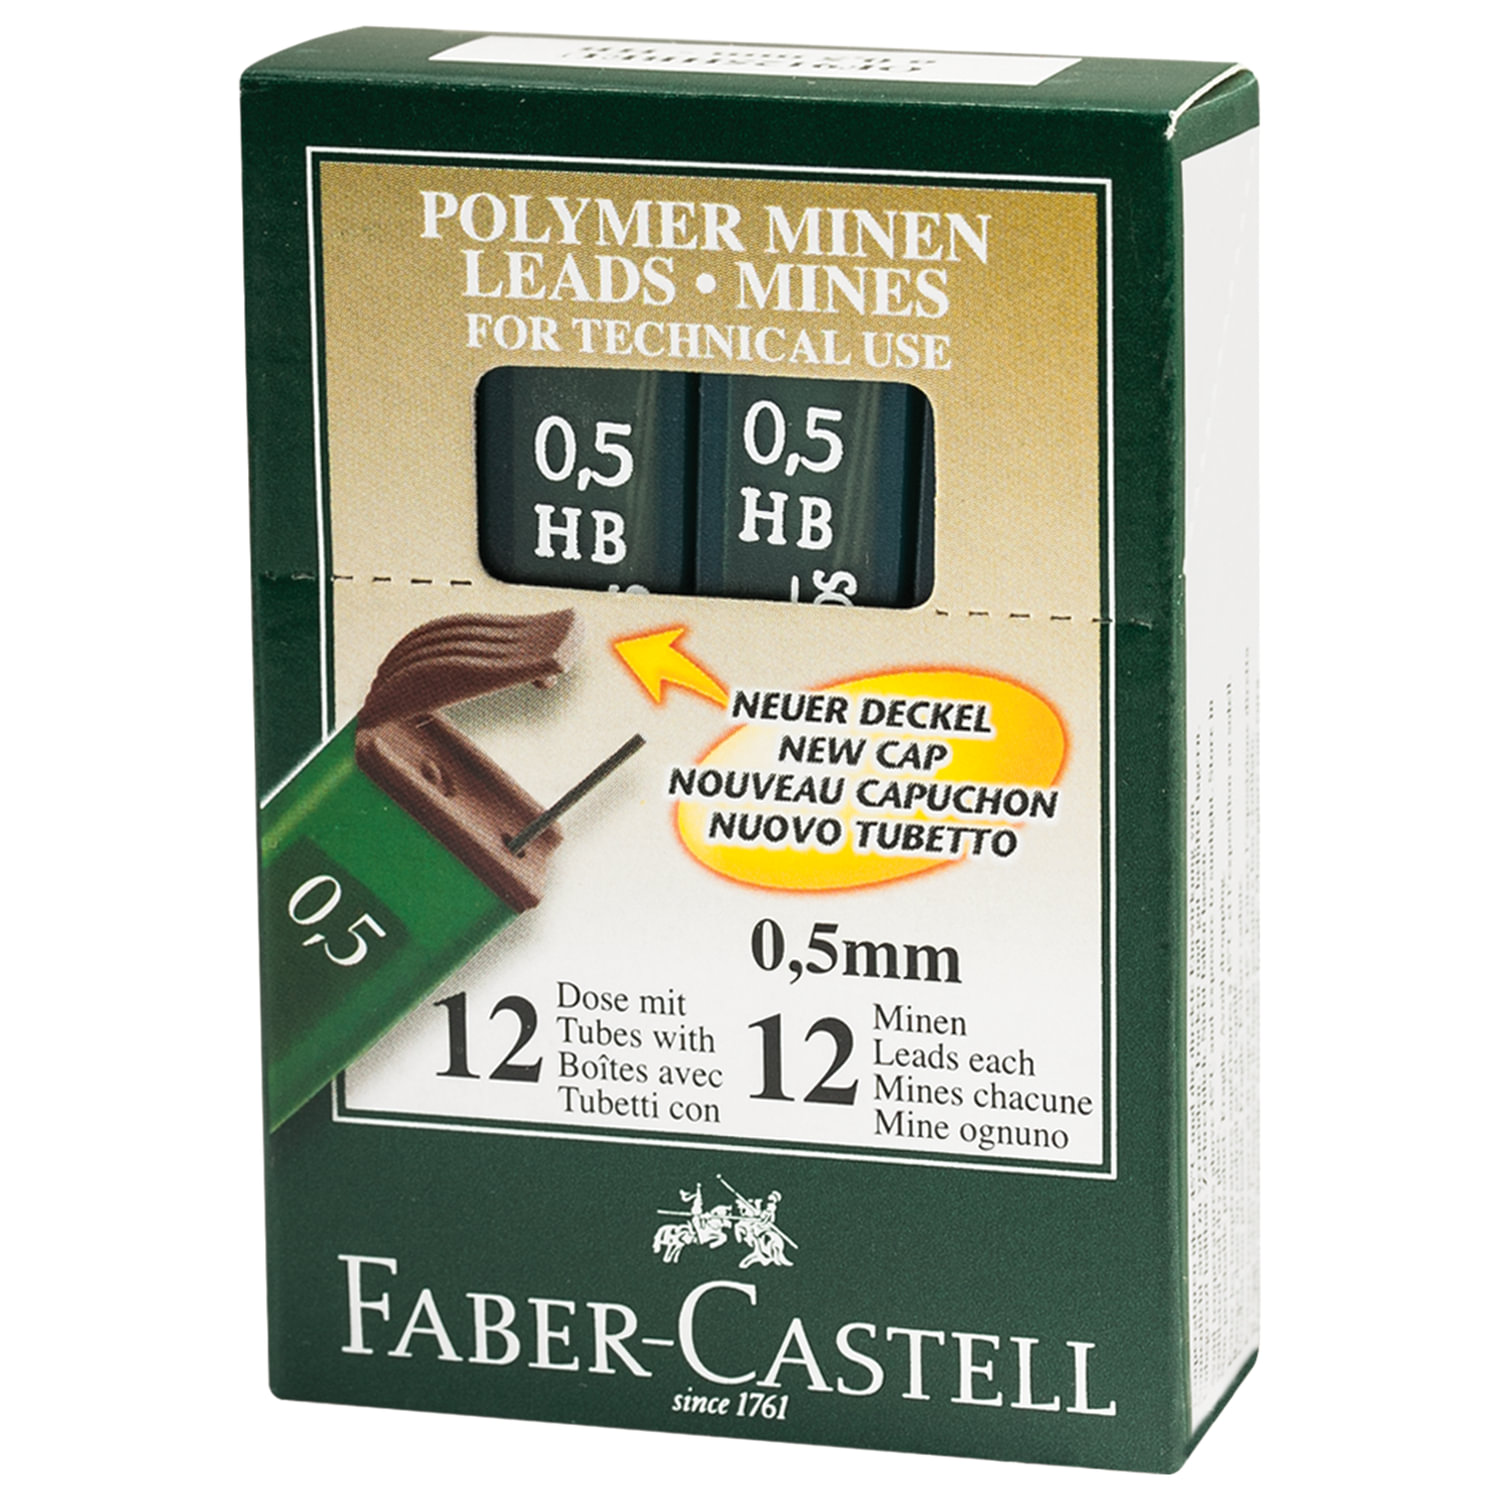 Сменные стержни Faber-Castell Polymer 0.5мм, НВ 12 упаковок по 12шт. 521500